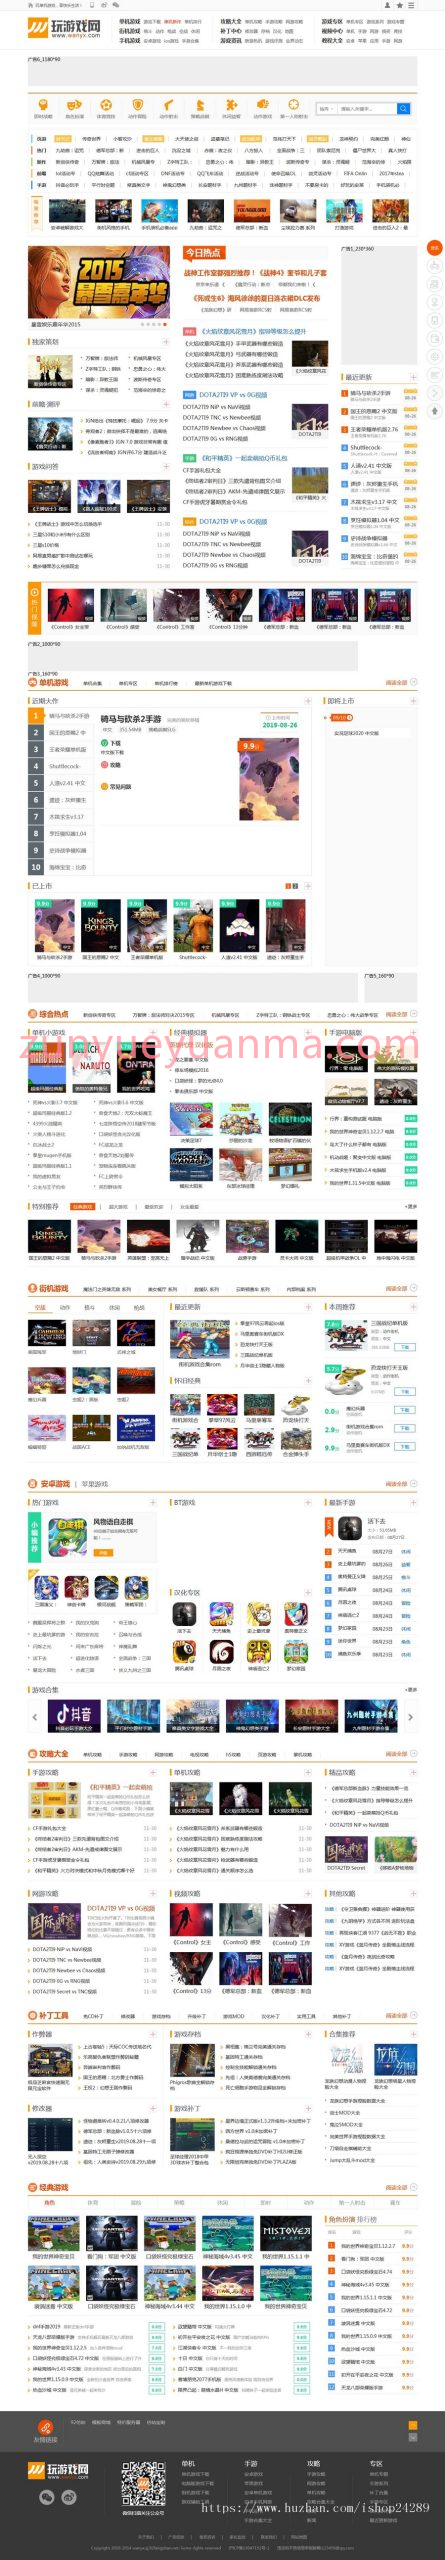 帝国cms内核仿玩游戏 大型游戏资讯门户网站模板